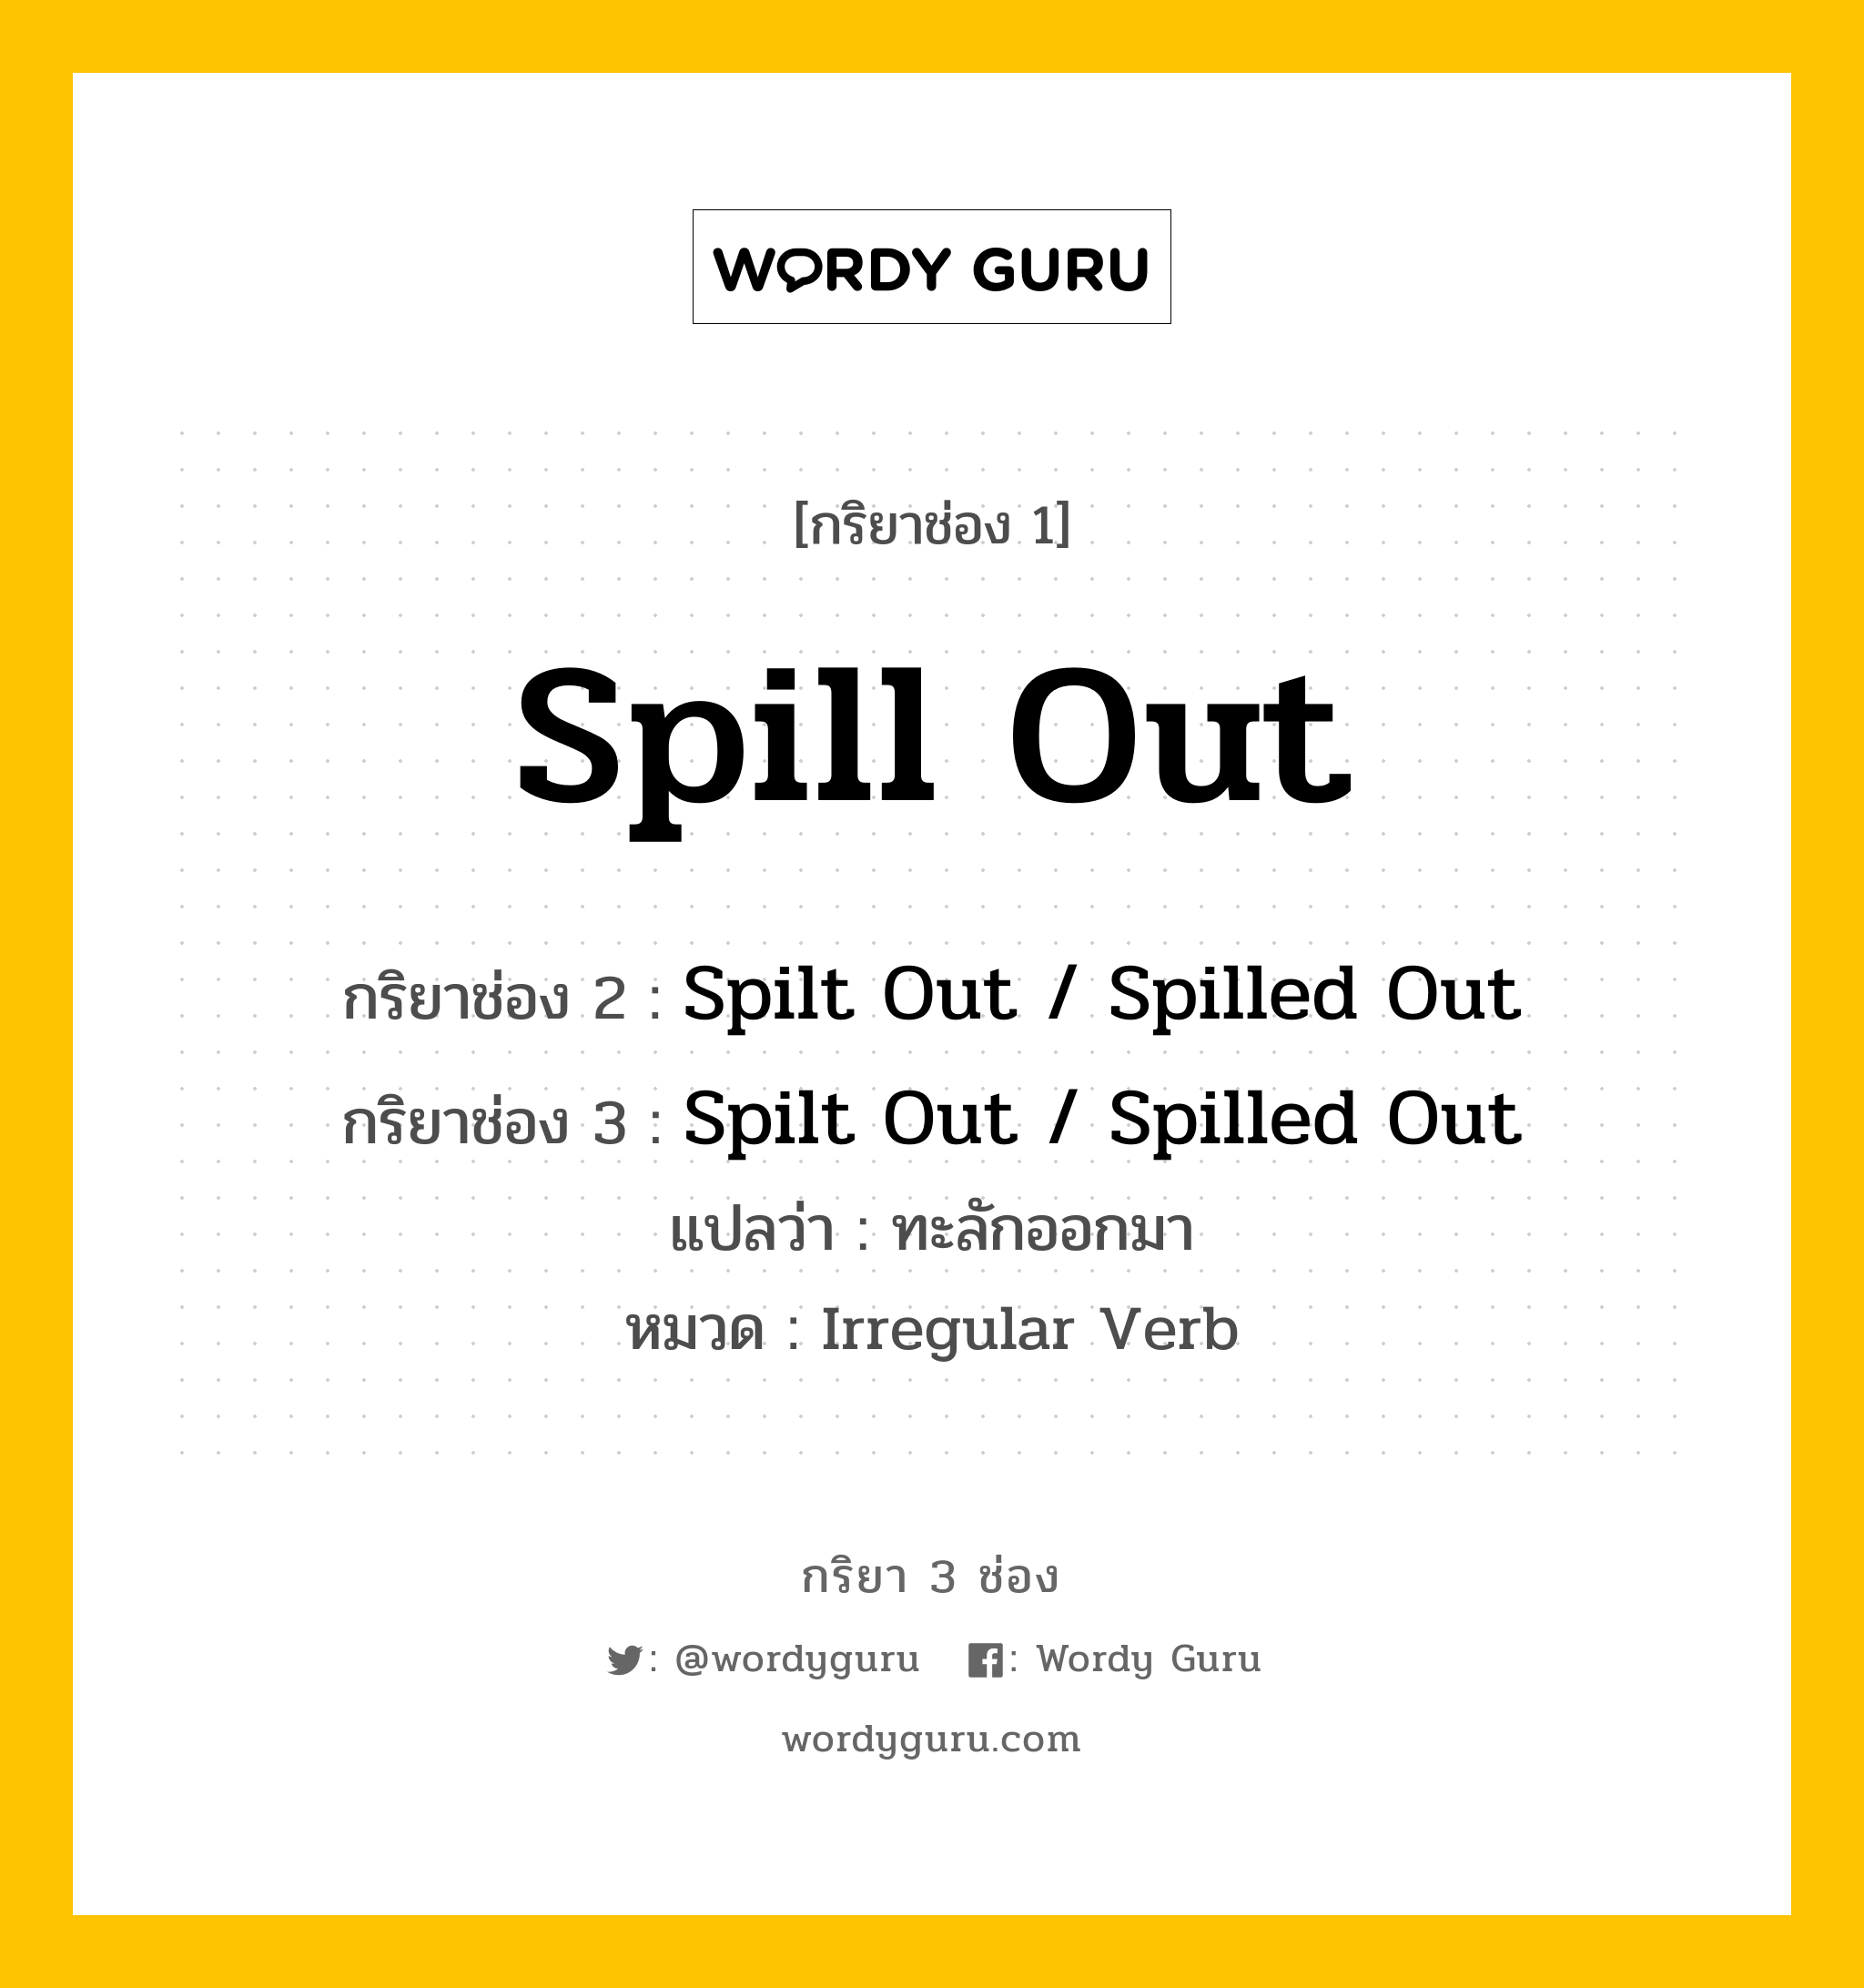 กริยา 3 ช่อง: Spill Out ช่อง 2 Spill Out ช่อง 3 คืออะไร, กริยาช่อง 1 Spill Out กริยาช่อง 2 Spilt Out / Spilled Out กริยาช่อง 3 Spilt Out / Spilled Out แปลว่า ทะลักออกมา หมวด Irregular Verb หมวด Irregular Verb